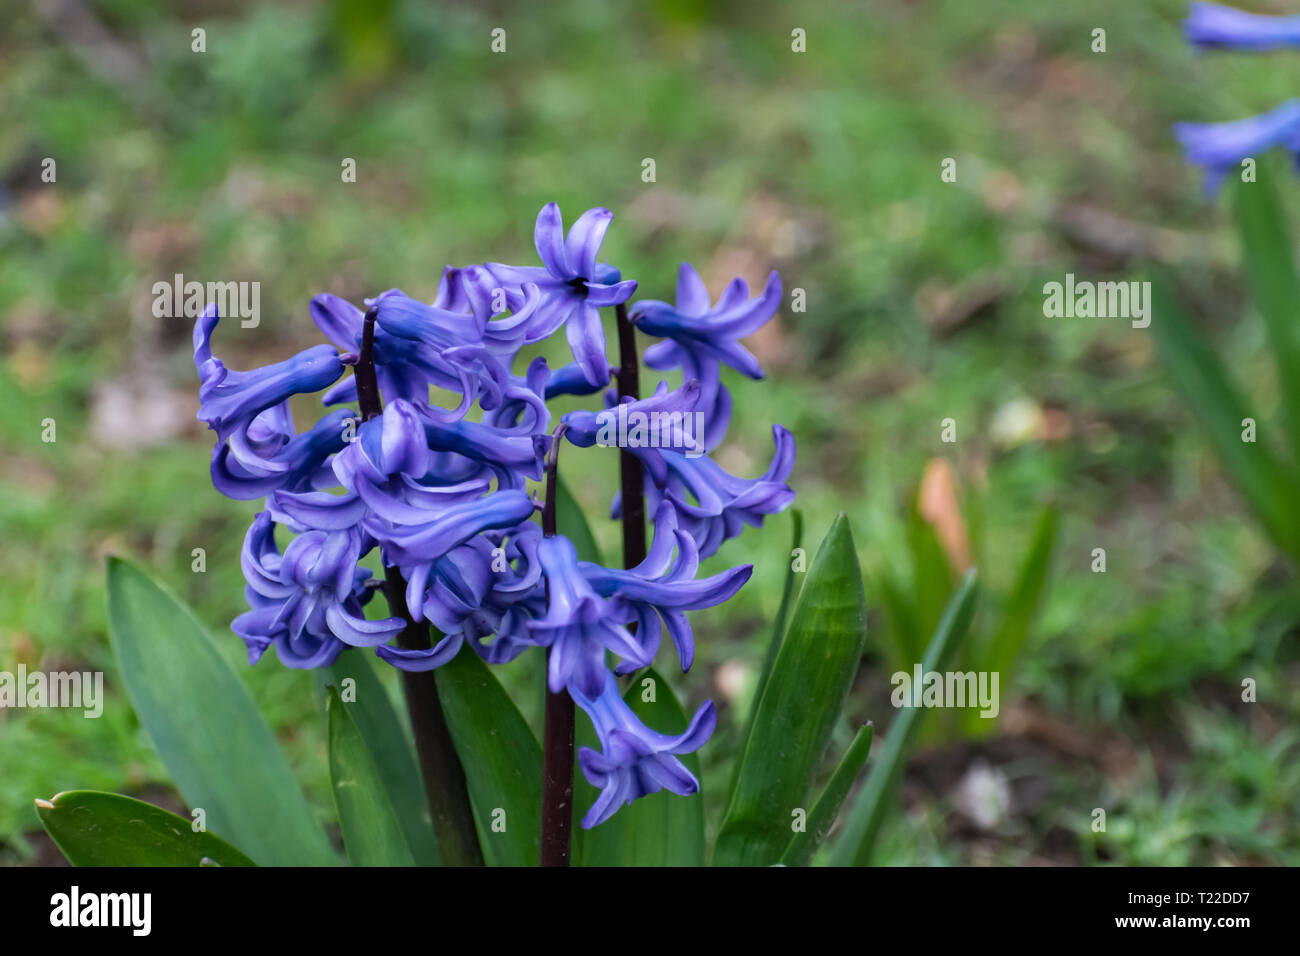 Holz Hyazinthen: Spanisch Blue-Bells in deutschen Park. Giftige indigo Blumen und Pflanzen. Rotwild beständig Blumen. Stockfoto